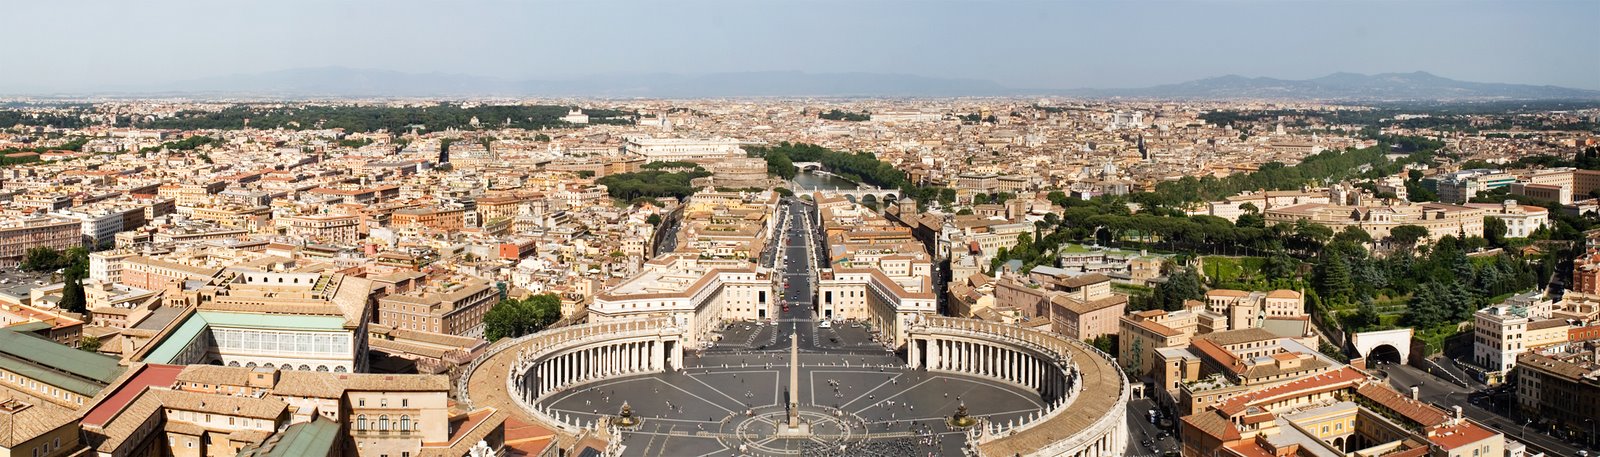 [panoramica_vaticano.jpg]